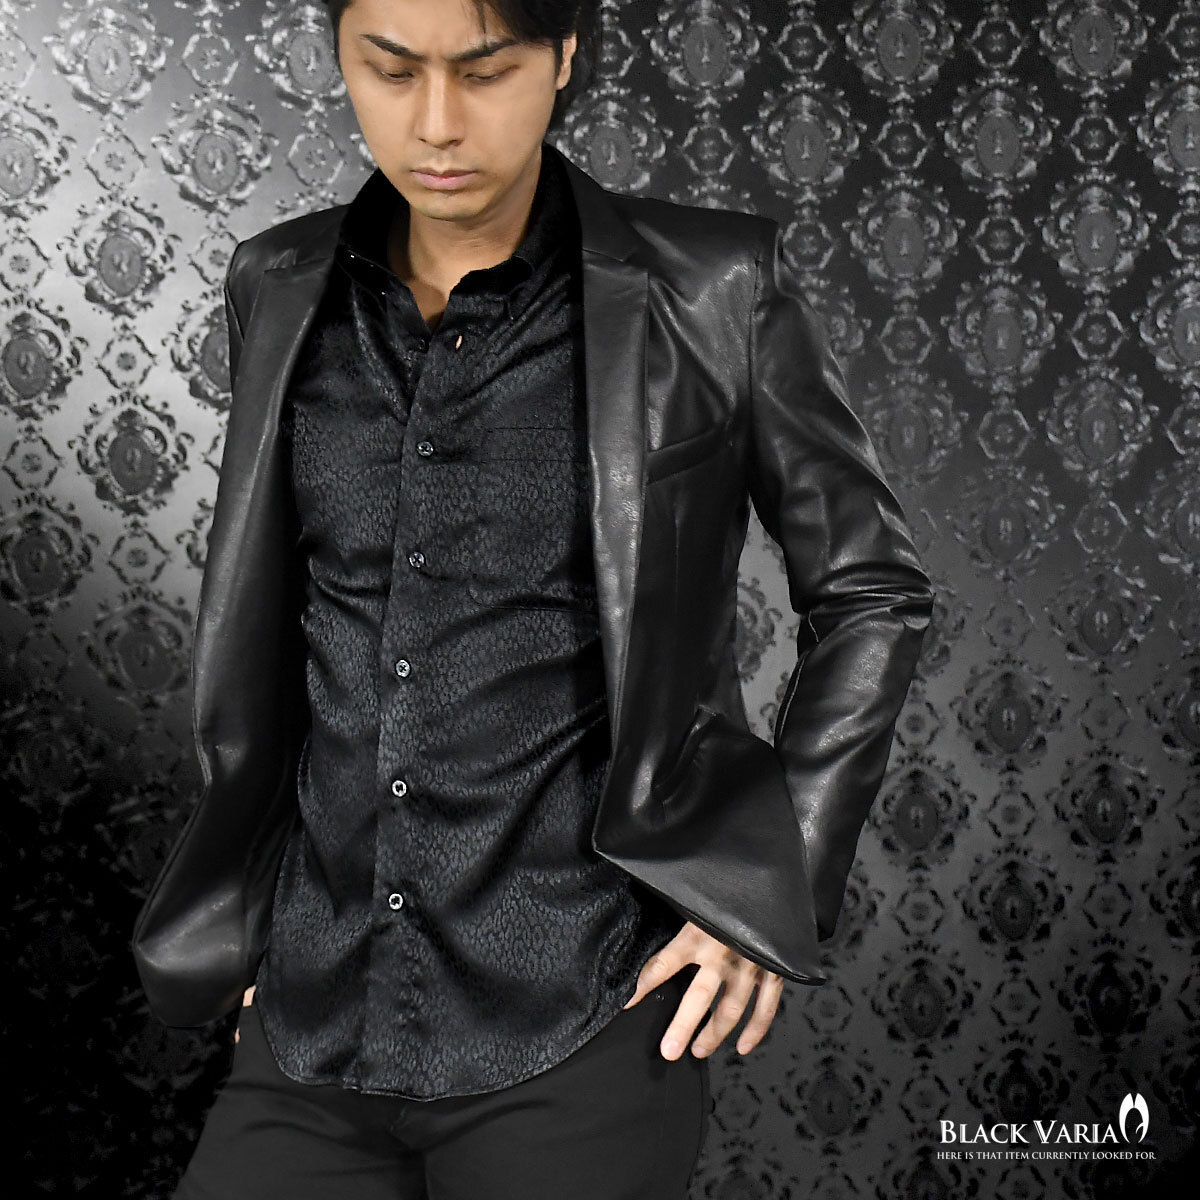 a181710-bk BLACK VARIA ドゥエボットーニ ヒョウ柄 豹 ジャガード レギュラーカラードレスシャツ 日本製 メンズ(ブラック黒) L パーティー_画像2